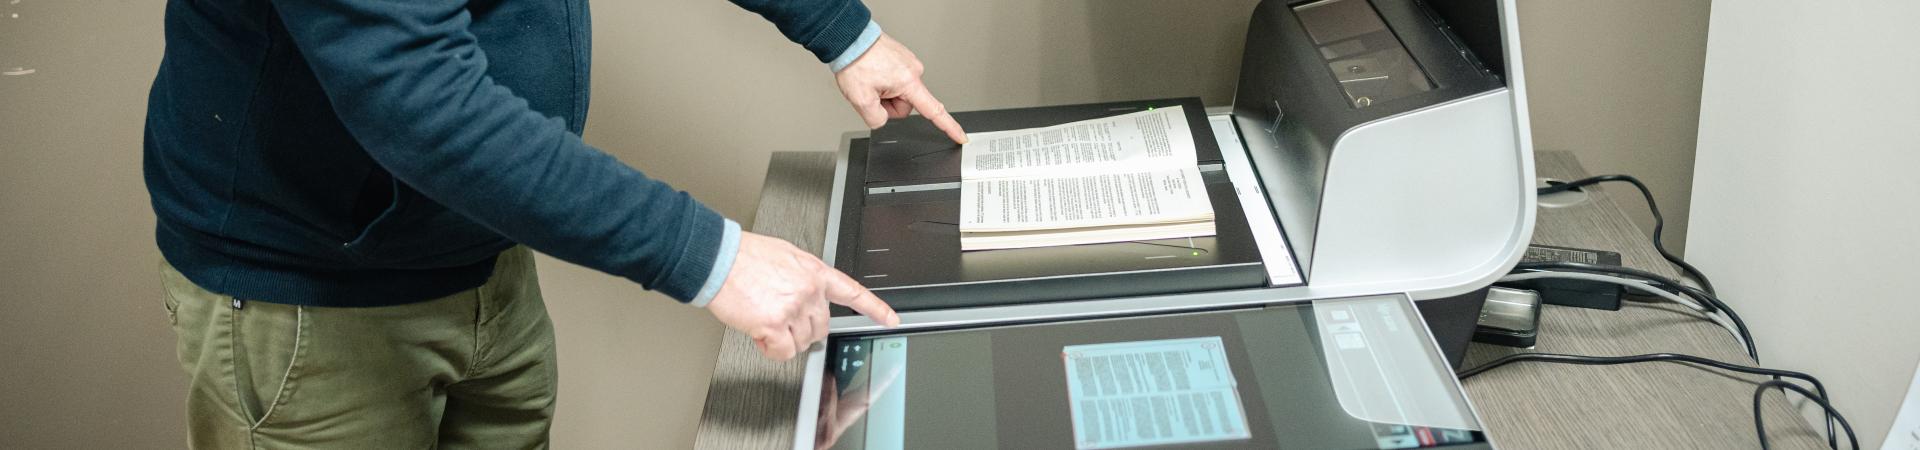 Leeszaalbezoeker gebruikt boekscanner om spread van boek in te scannen.